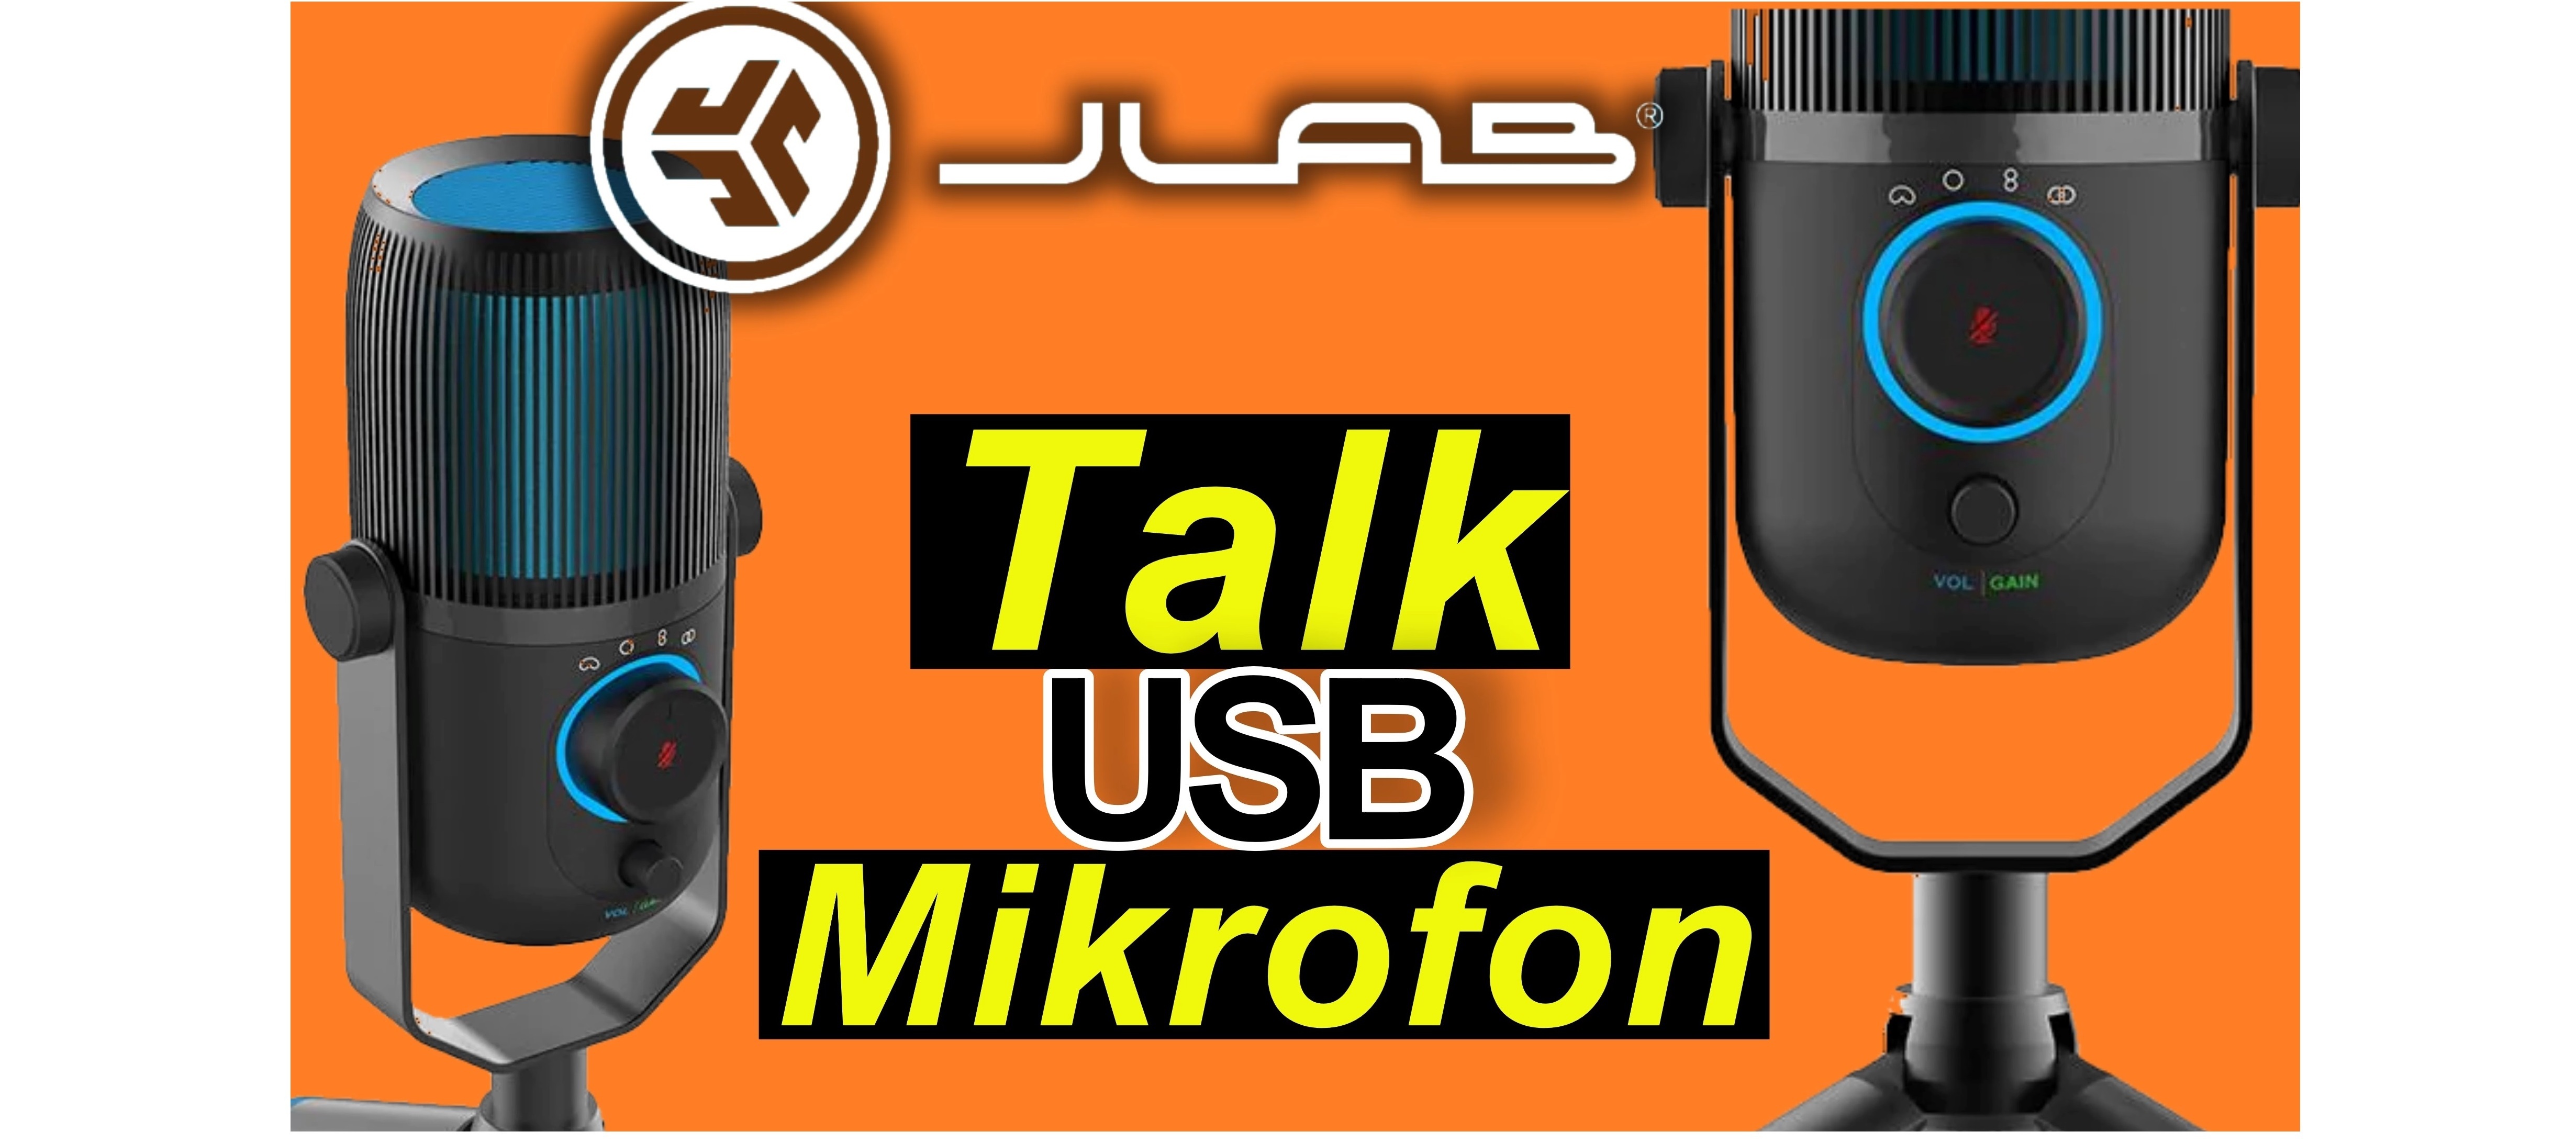 JLab Talk USB Mikrofon. Plug und Play